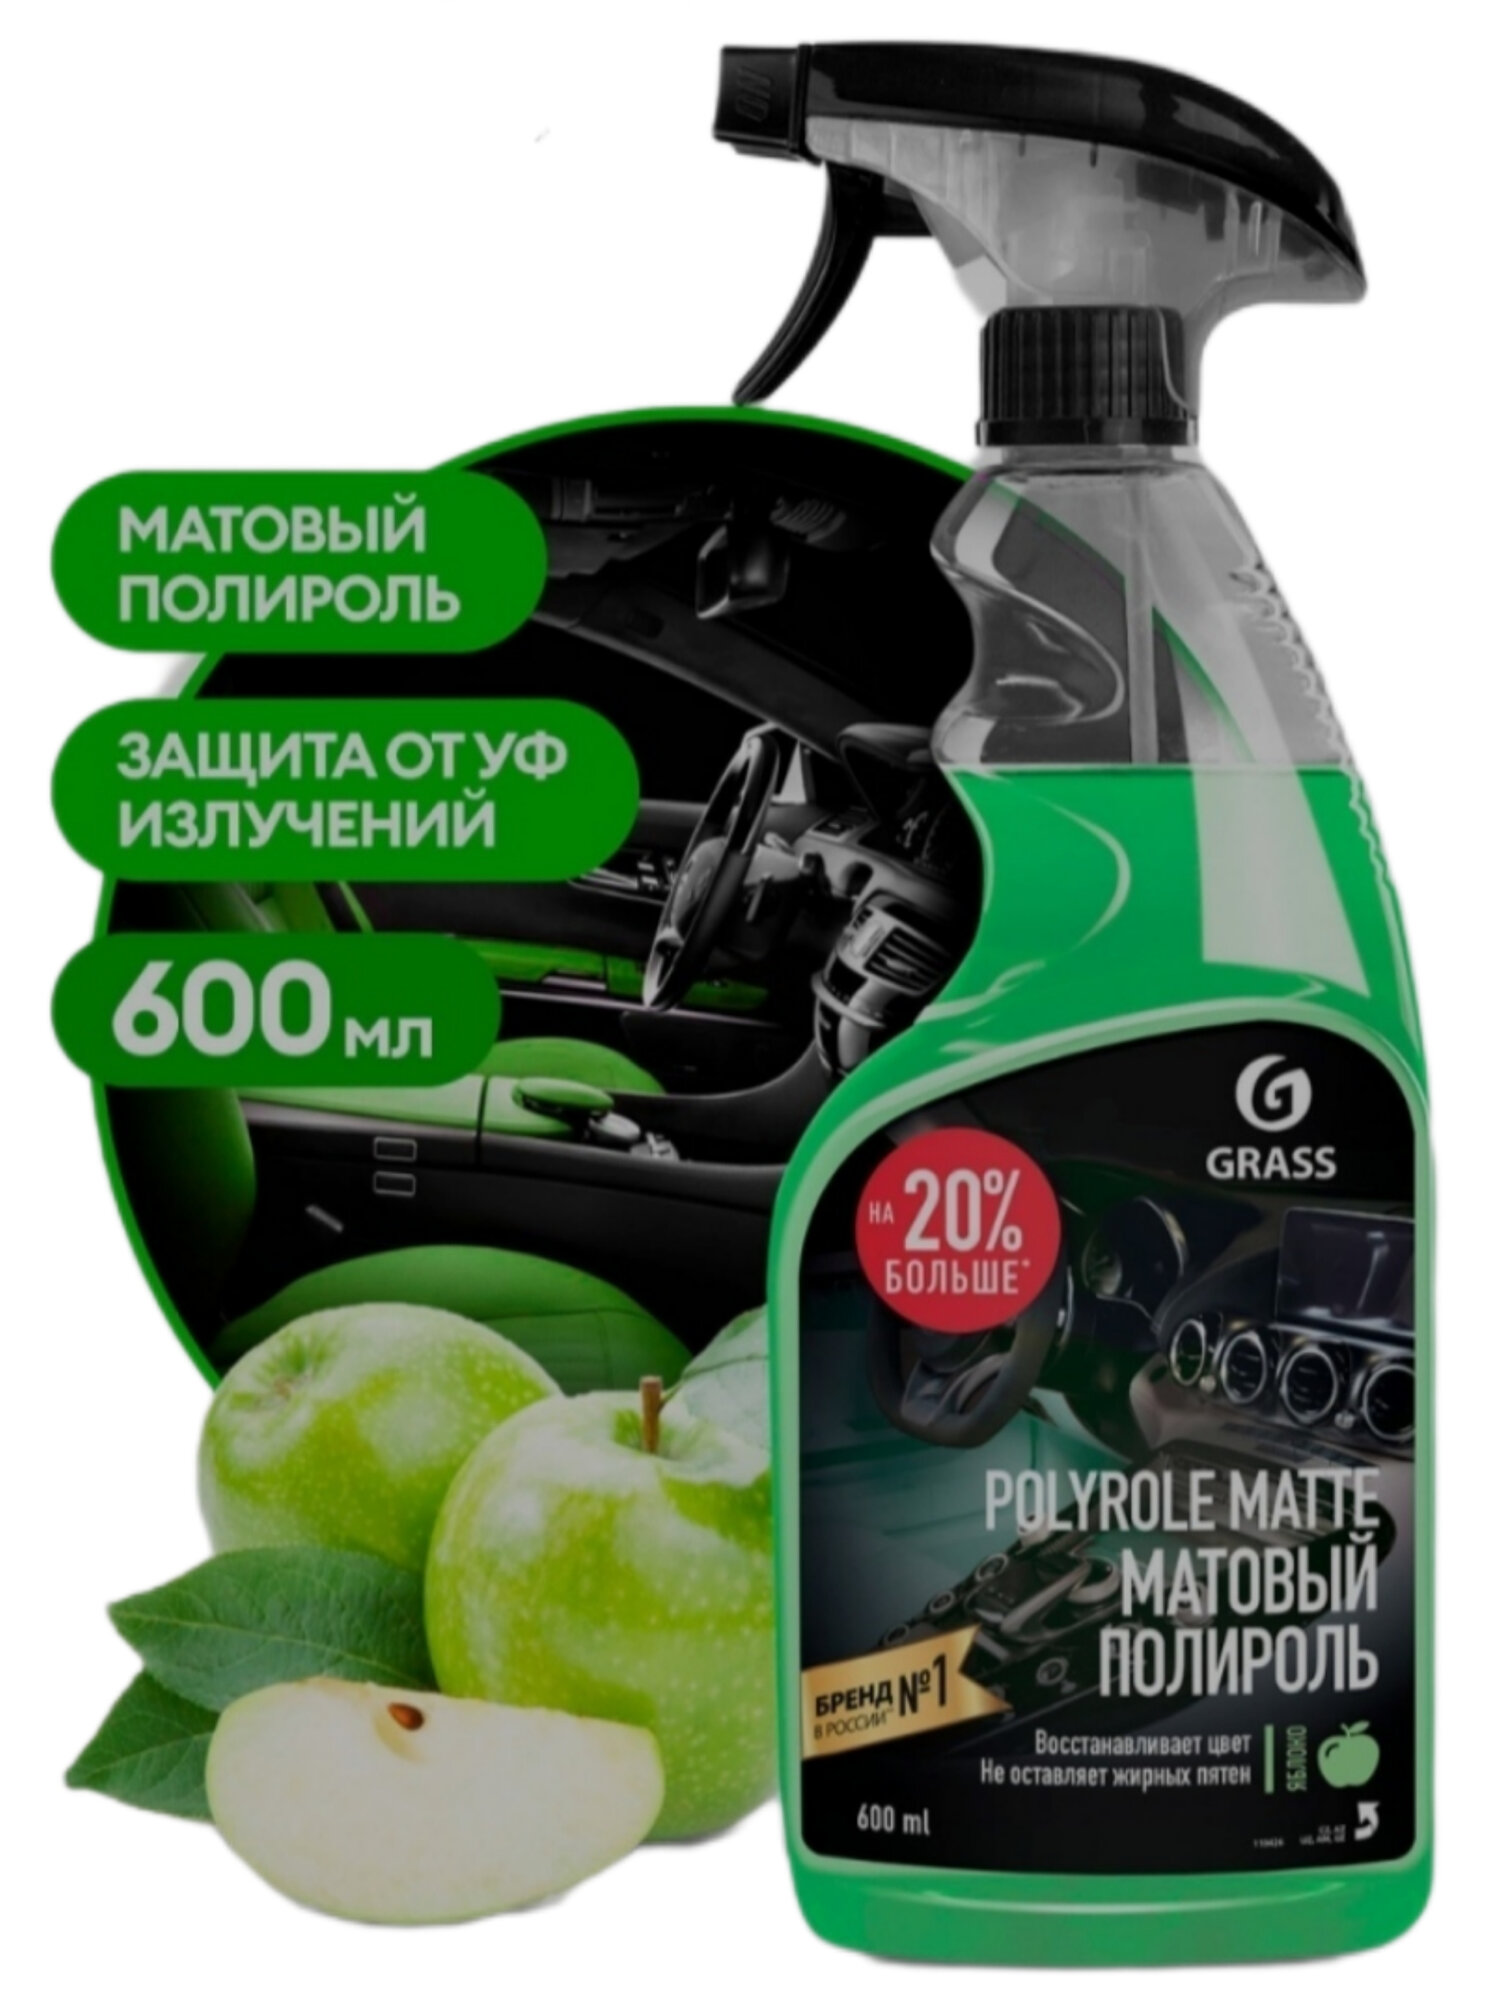 Полироль-очиститель пластика матовый GRASS Polyrole Matte яблоко 600мл триггер